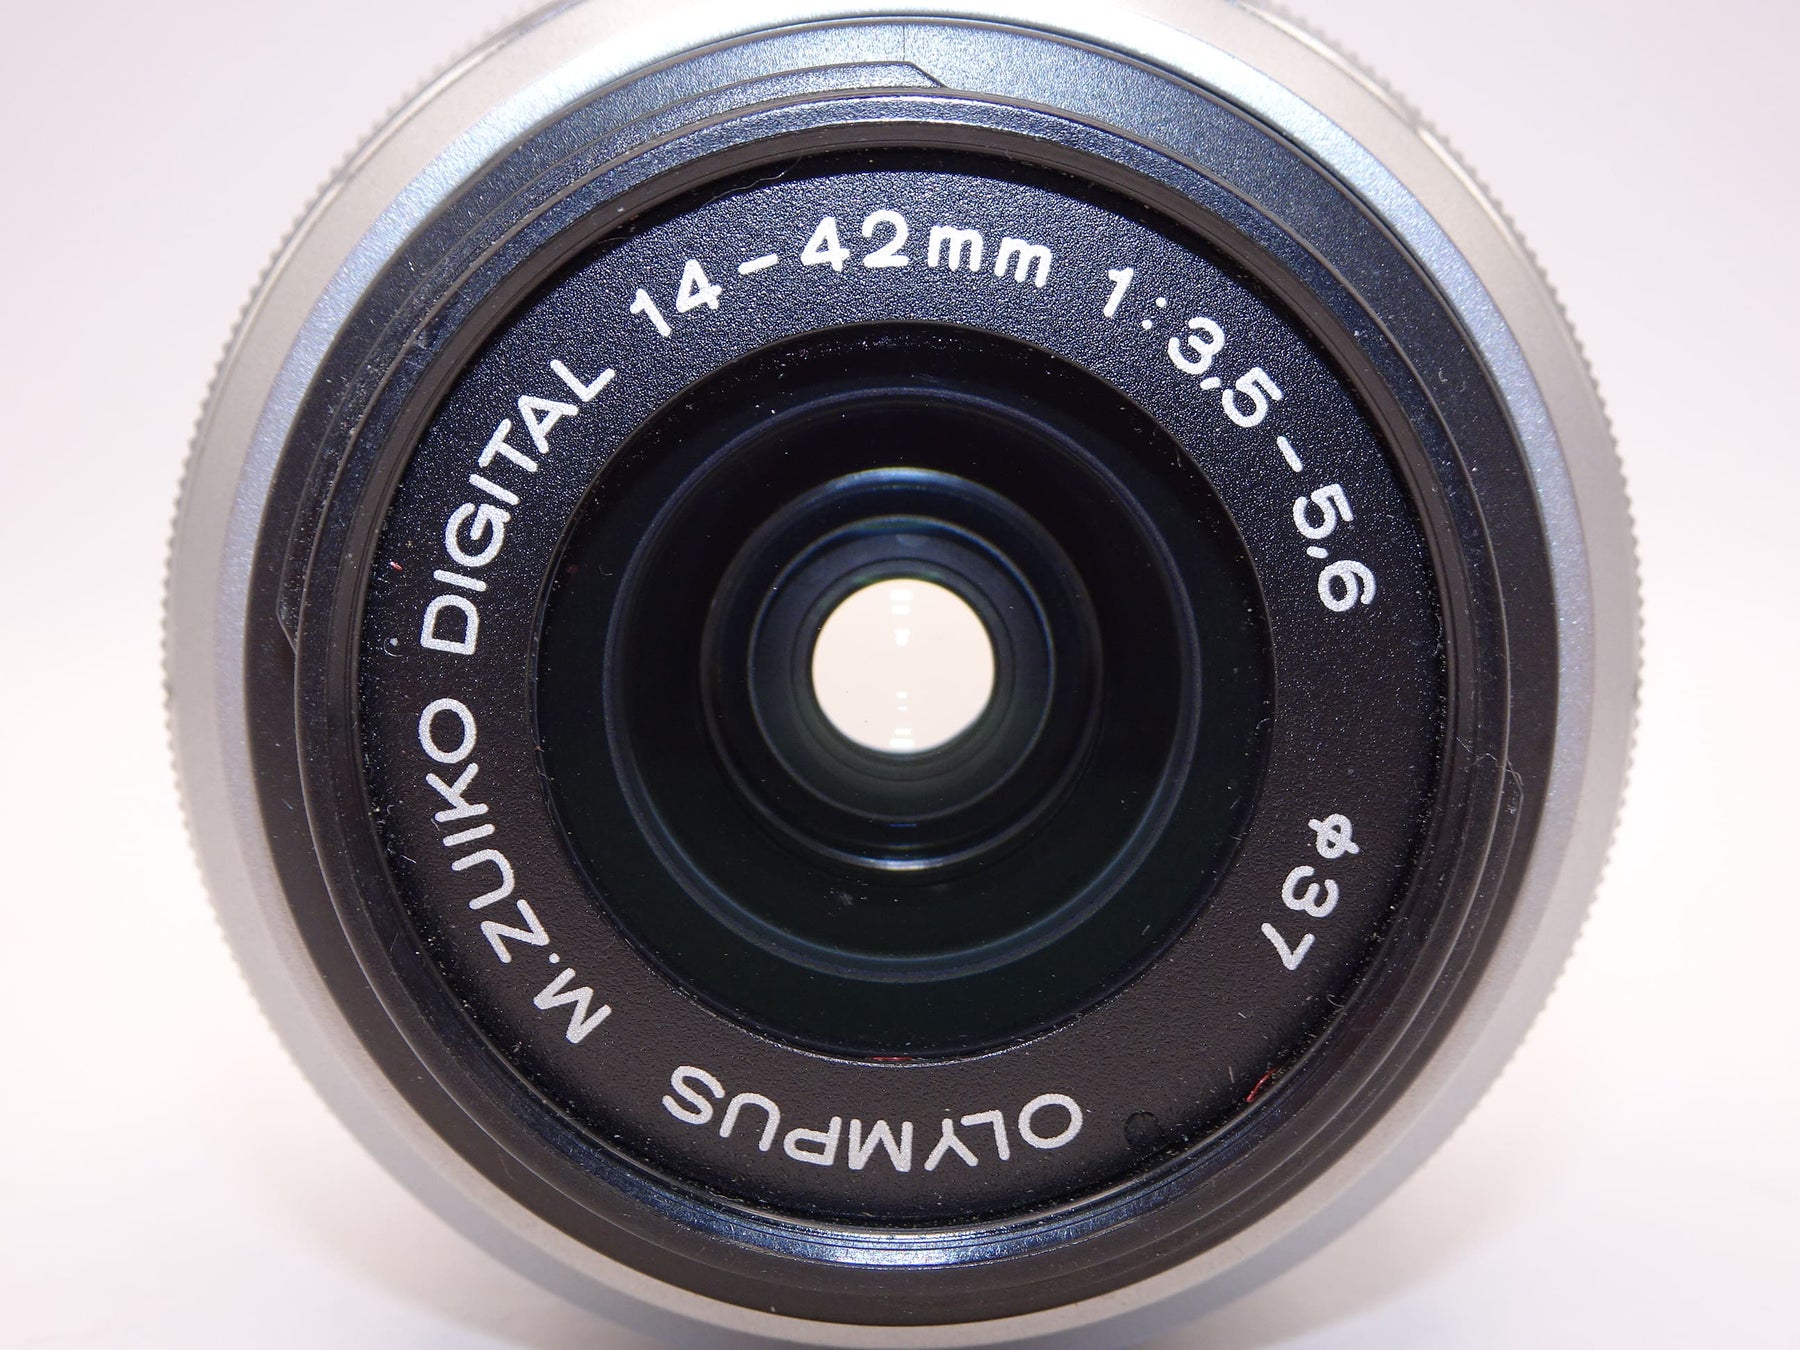 【外観特上級】OLYMPUS 標準ズームレンズ M.ZUIKO DIGITAL 14-42mm F3.5-5.6 II R シルバー